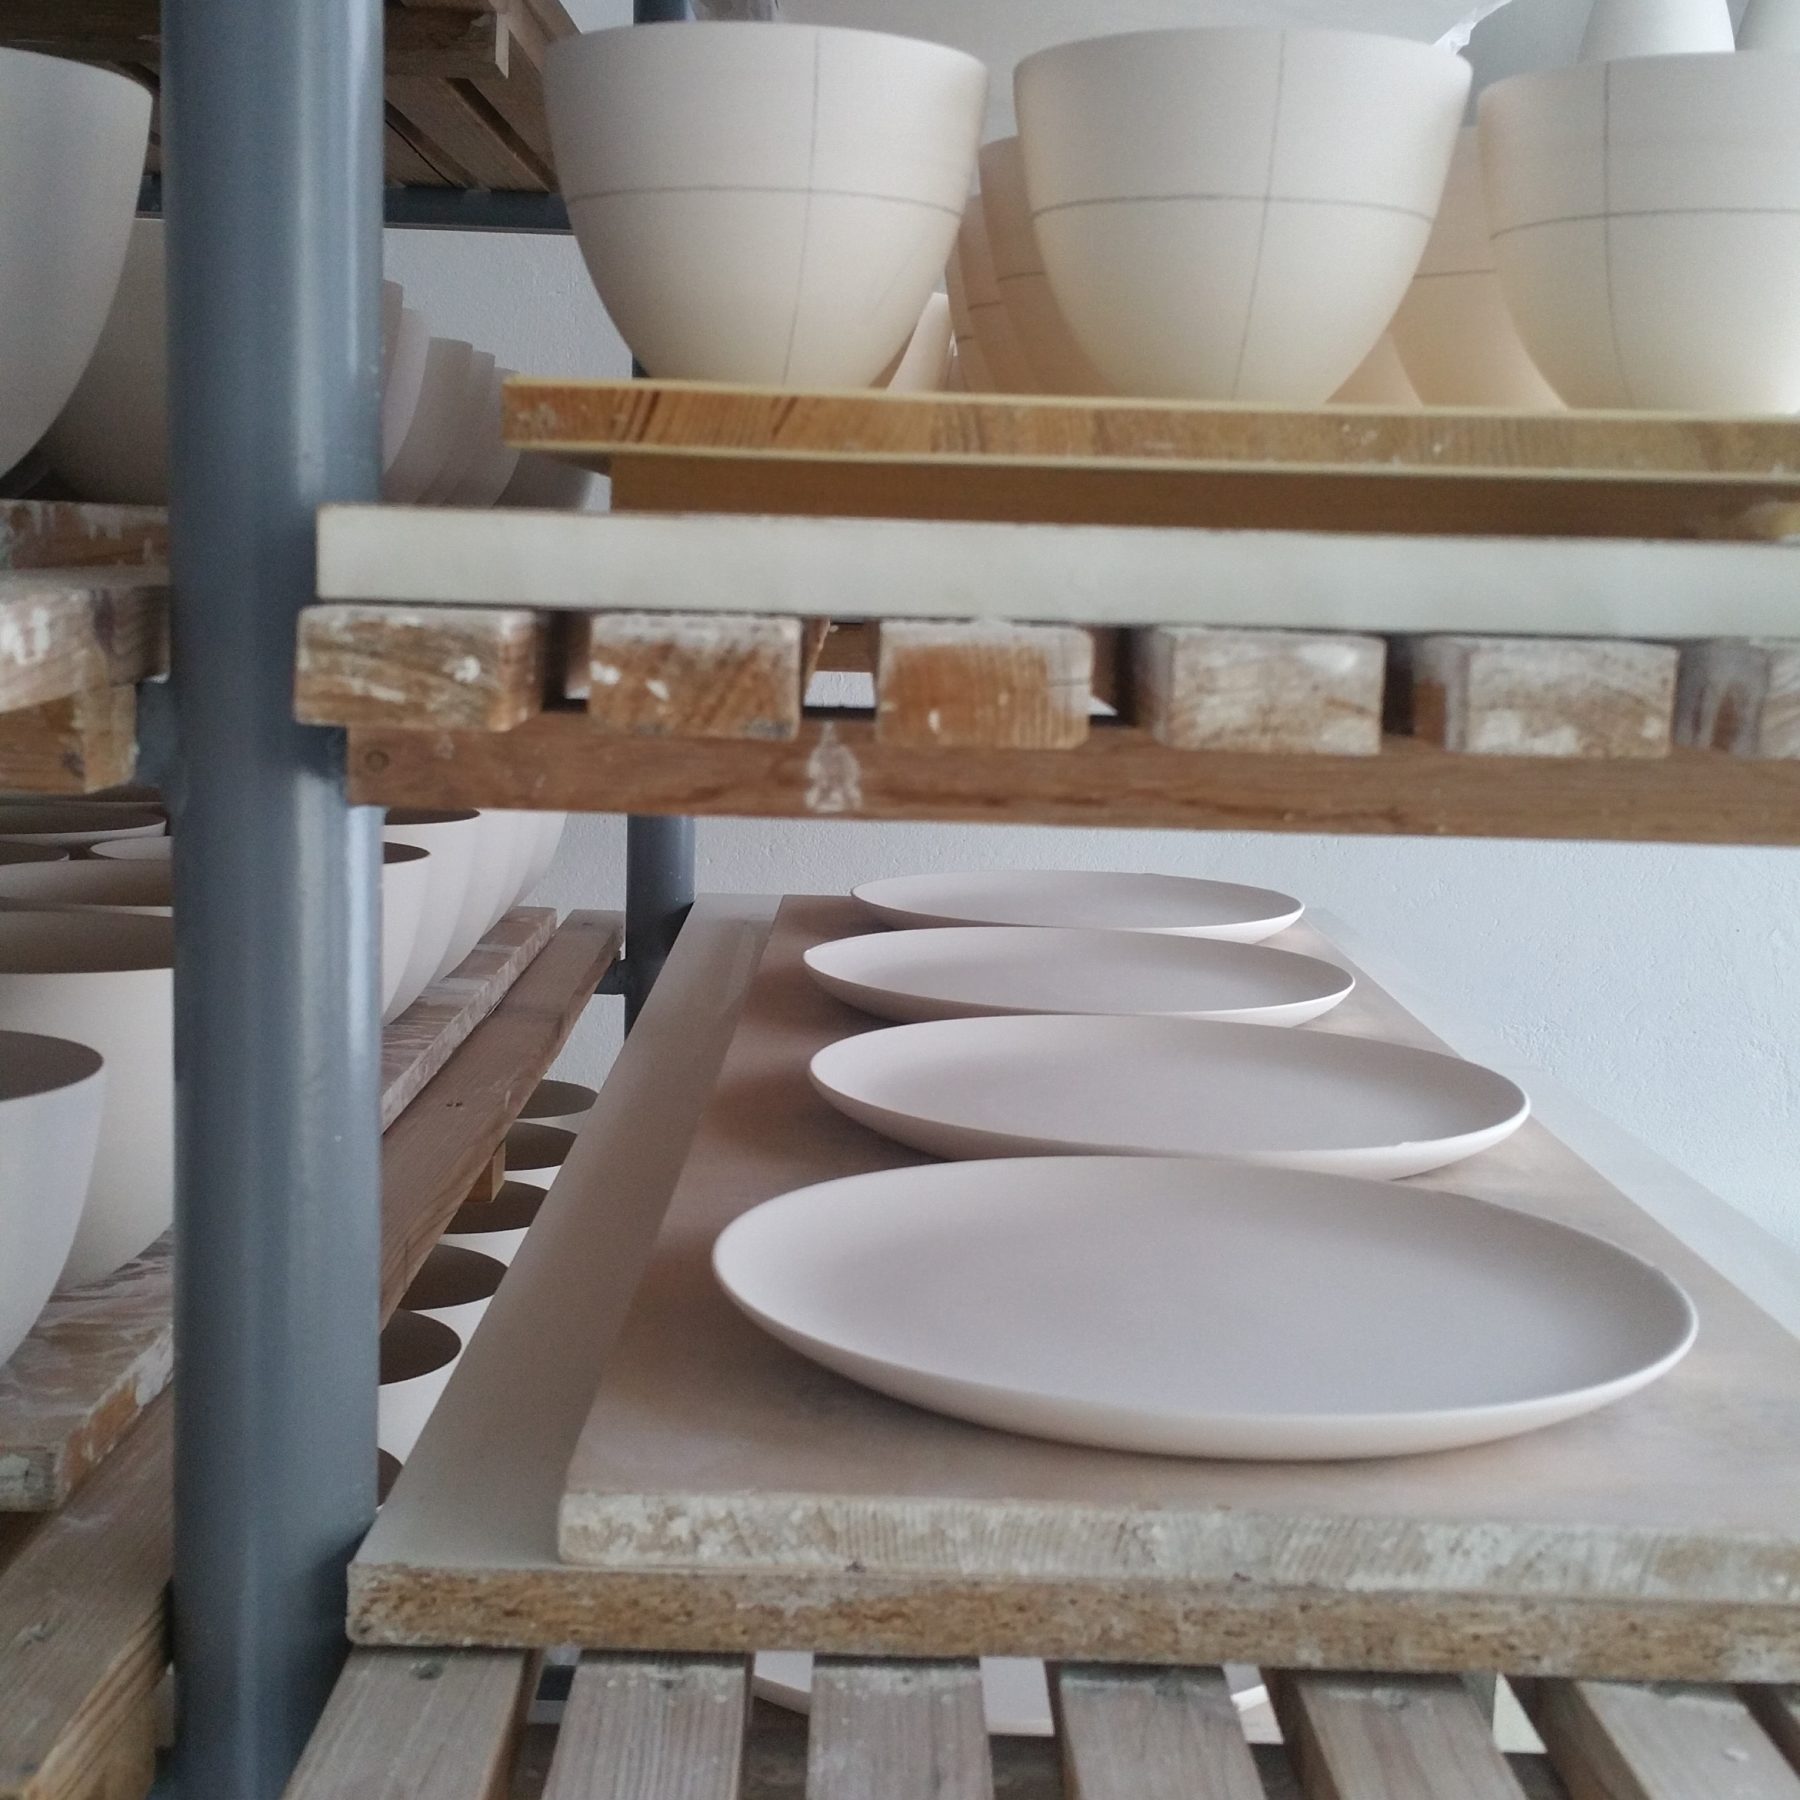 Schoemig Porzellan - Keramik, Porzellan, Becher, Manufaktur, handgemacht, Studio, Werkstatt